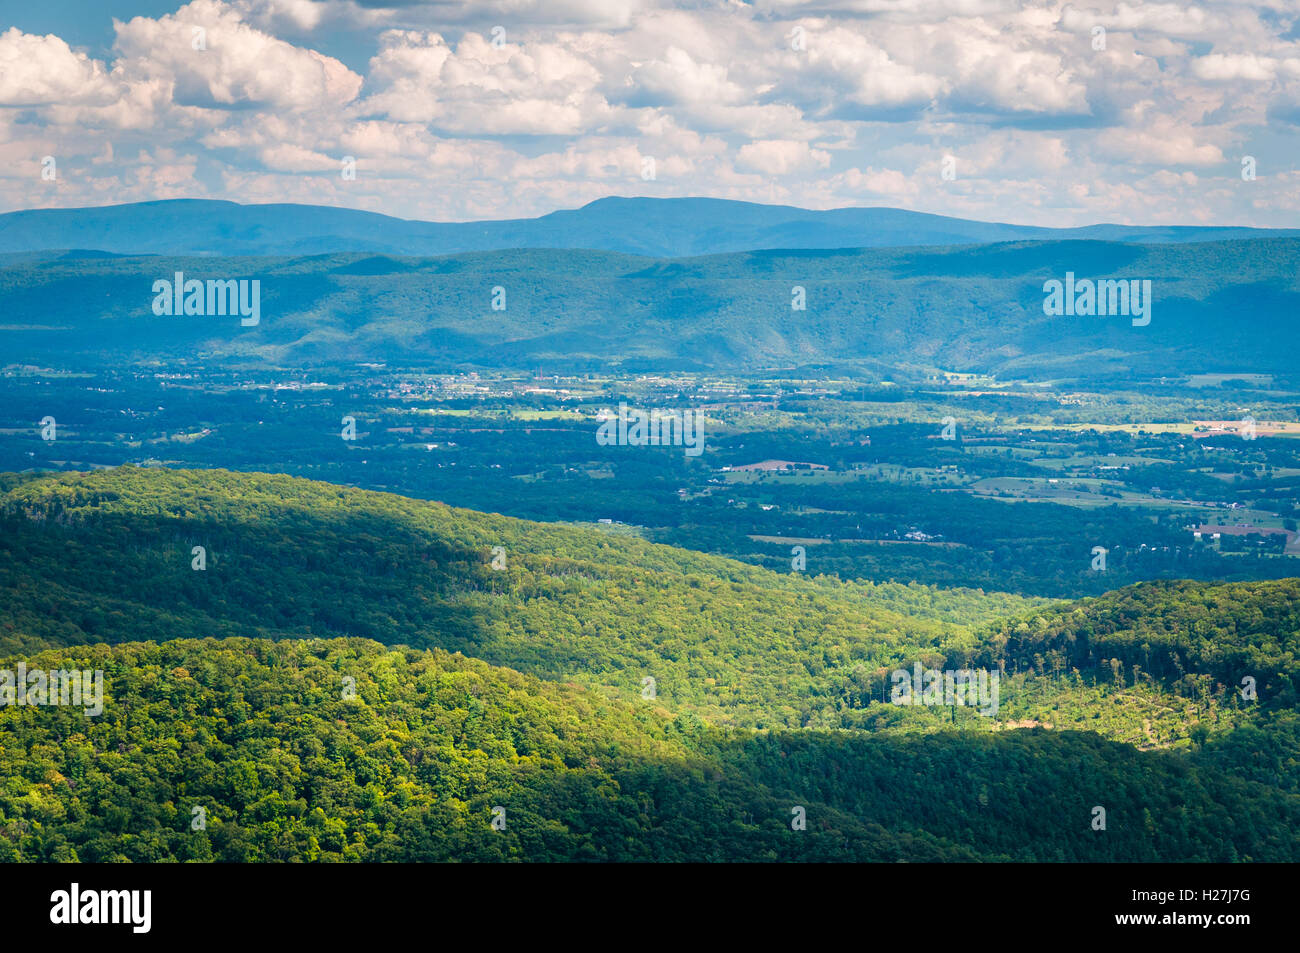 Vista del Valle de Shenandoah y Montañas Appalachian Trail de montaña desde el molino cerca de Big Schloss en George Washington Natio Foto de stock